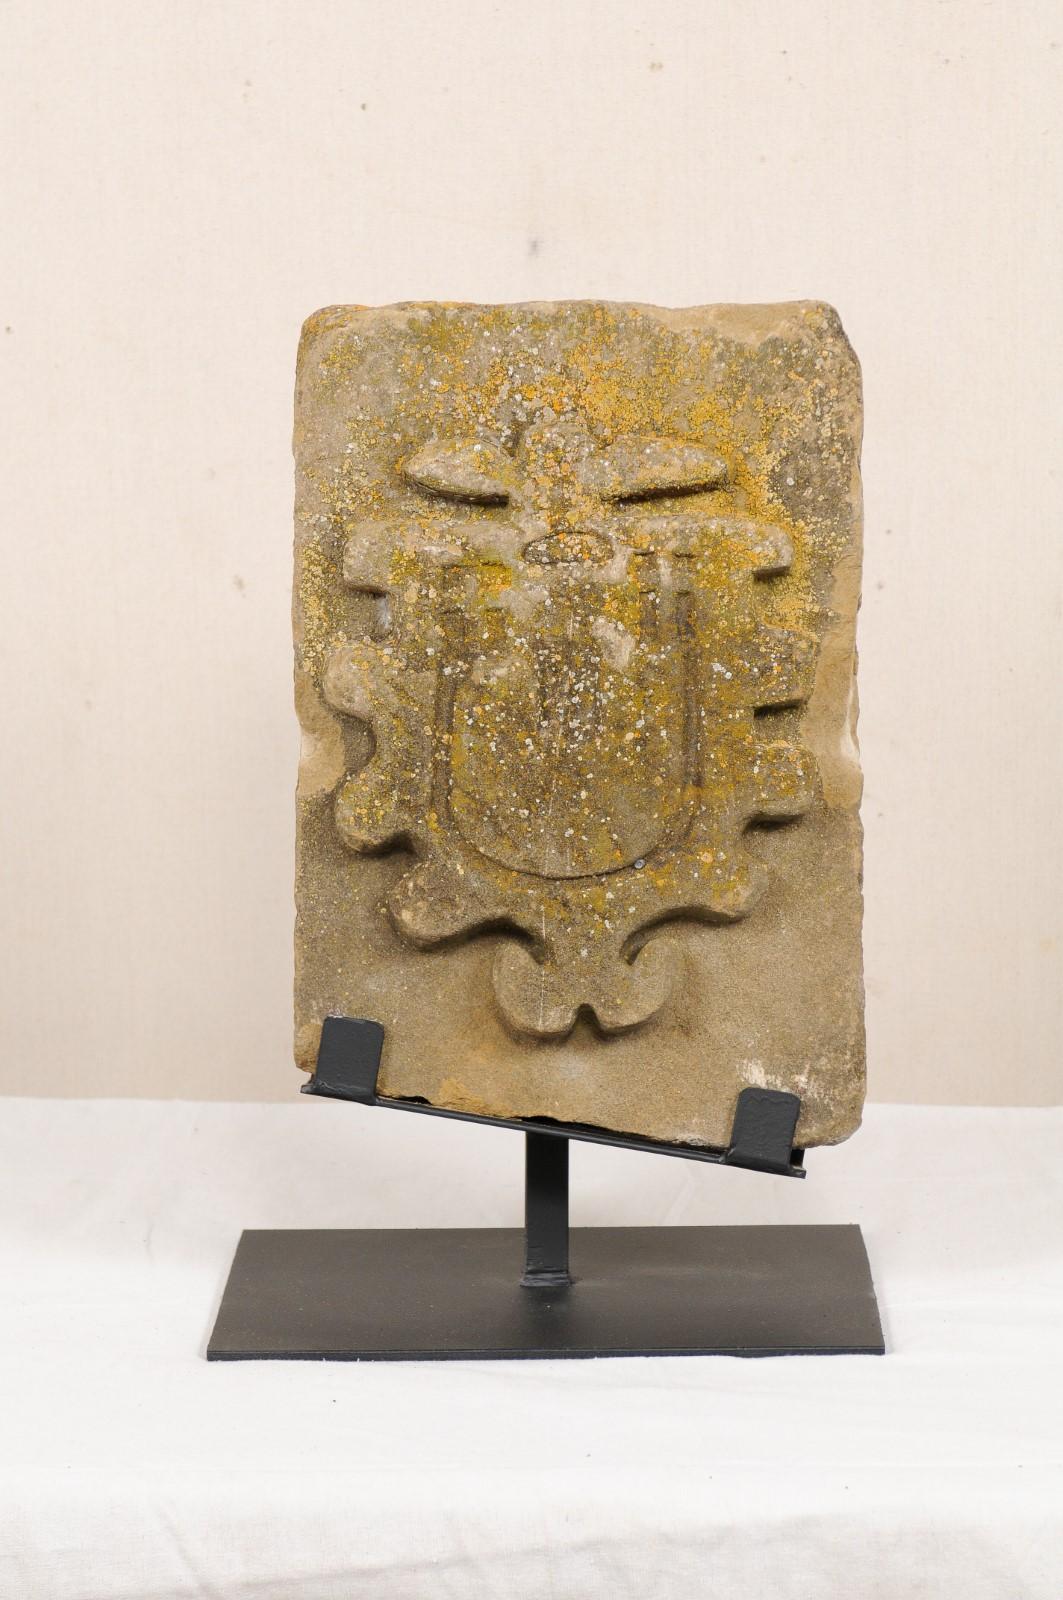 Ein architektonisches Fragment aus geschnitztem Stein aus dem 18. bis 19. Jahrhundert aus Aragonien, Spanien. Dieses antike architektonische Fragment aus Aragonien wurde von Hand in Stein gehauen und weist ein erhabenes schildförmiges Design mit